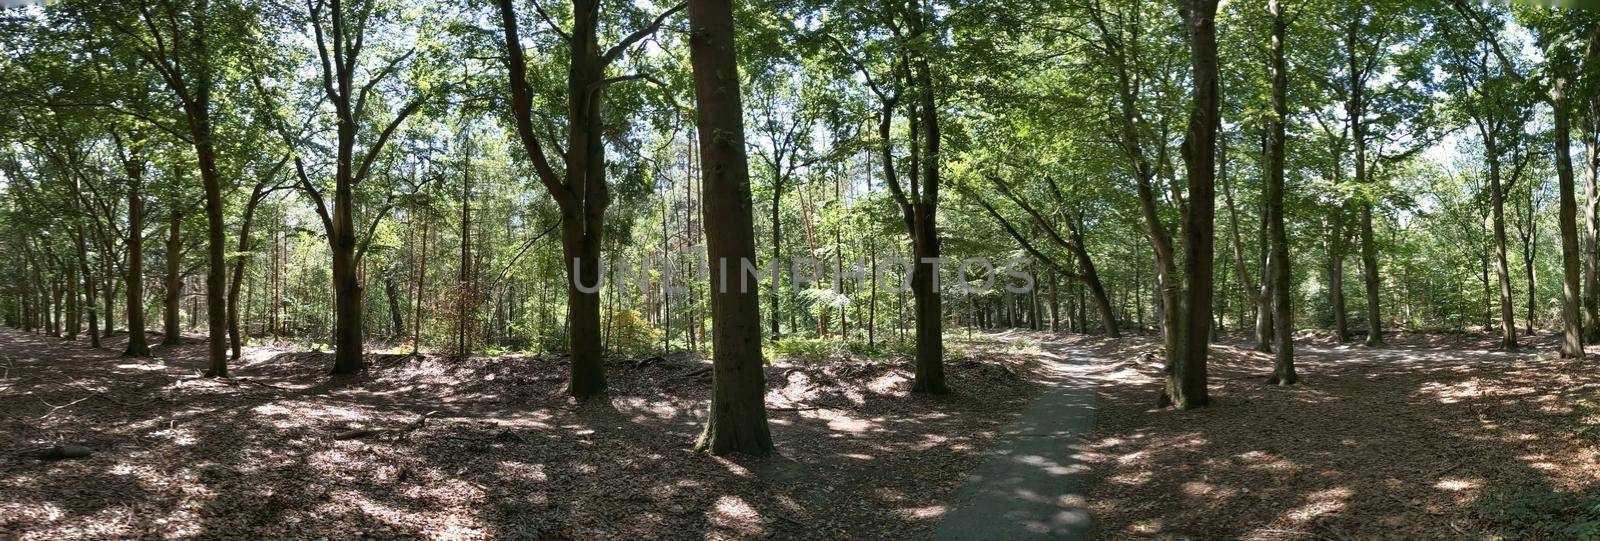 Forest around Steenwijk in The Netherlands